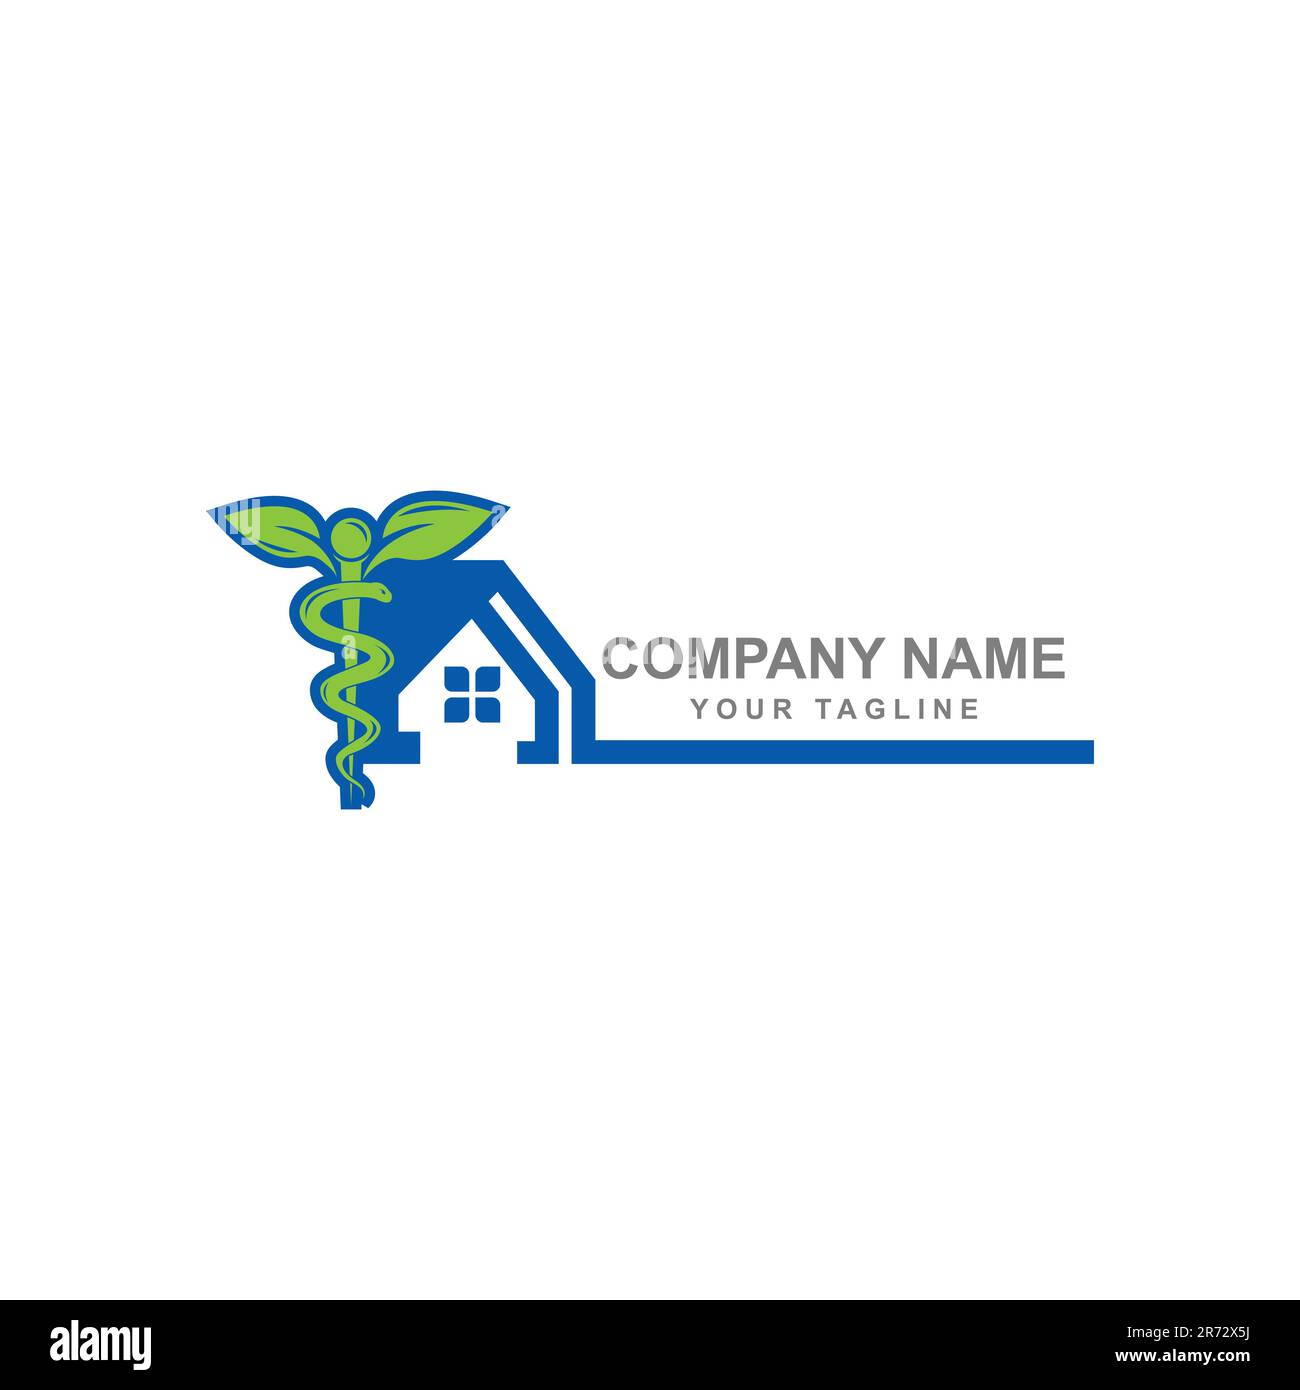 Medic House Logo Template Design Vector.EPS 10 Stock Vector